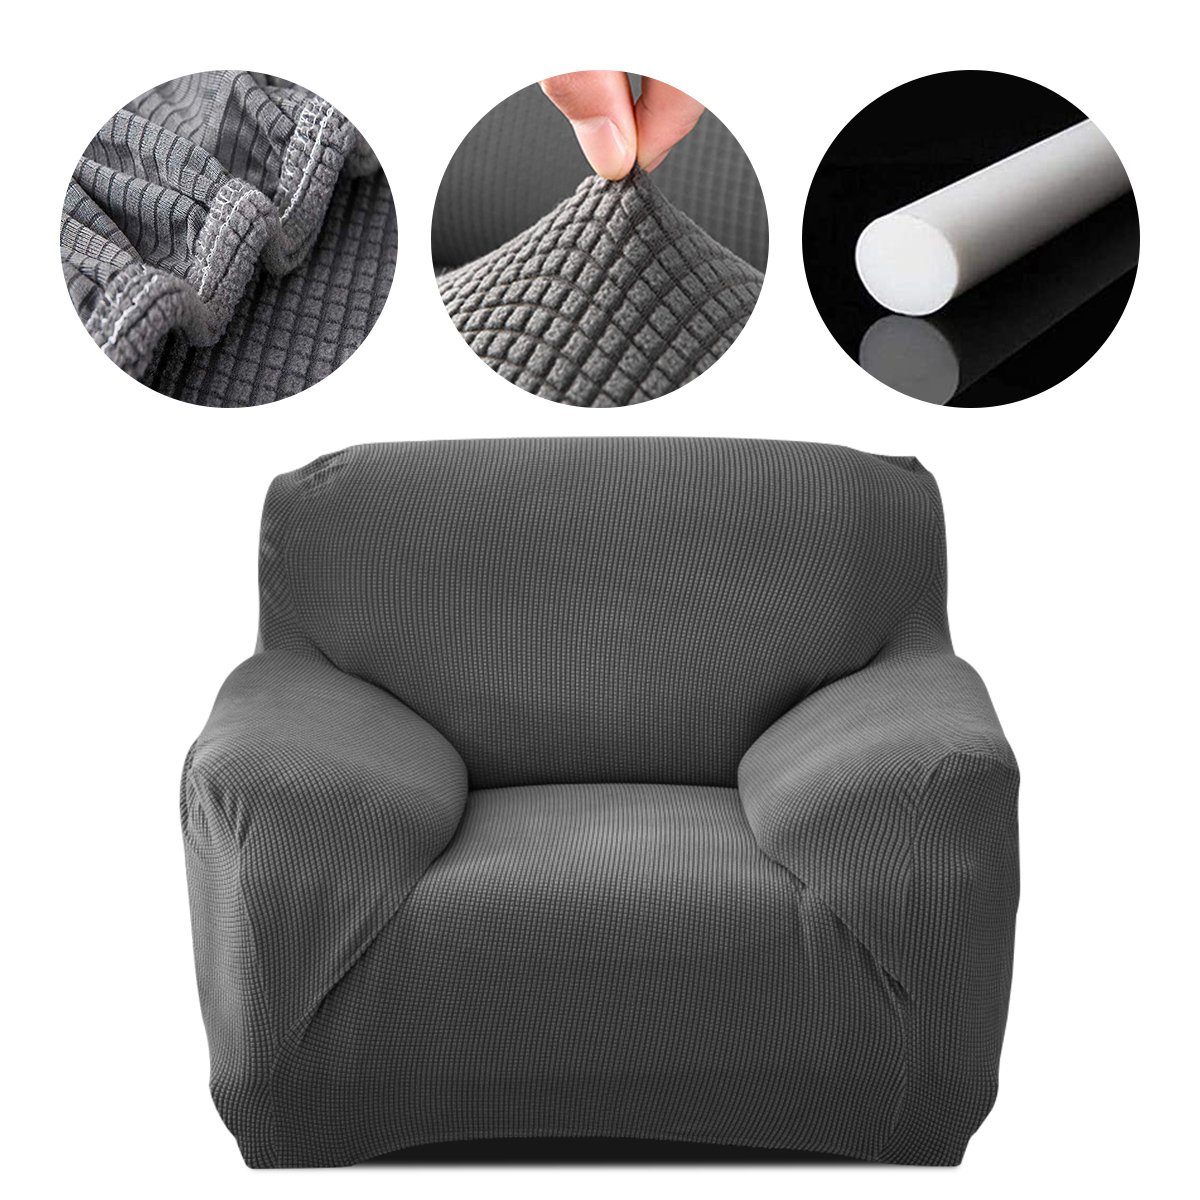 Sofahusse, 7Magic, Stretch Sofabezug Elastische Couchbezug Sofa Abdeckung Grau